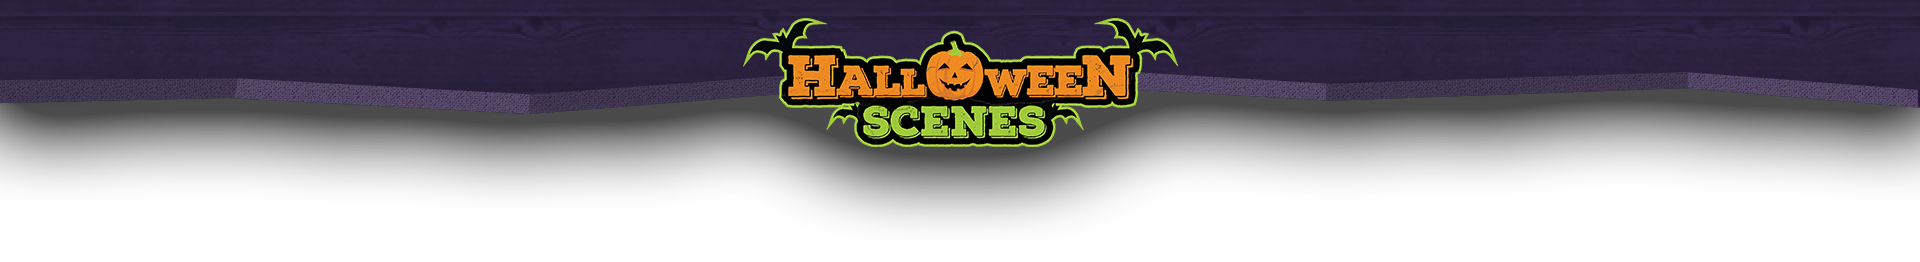 halloween-scenes-logo-divider-1